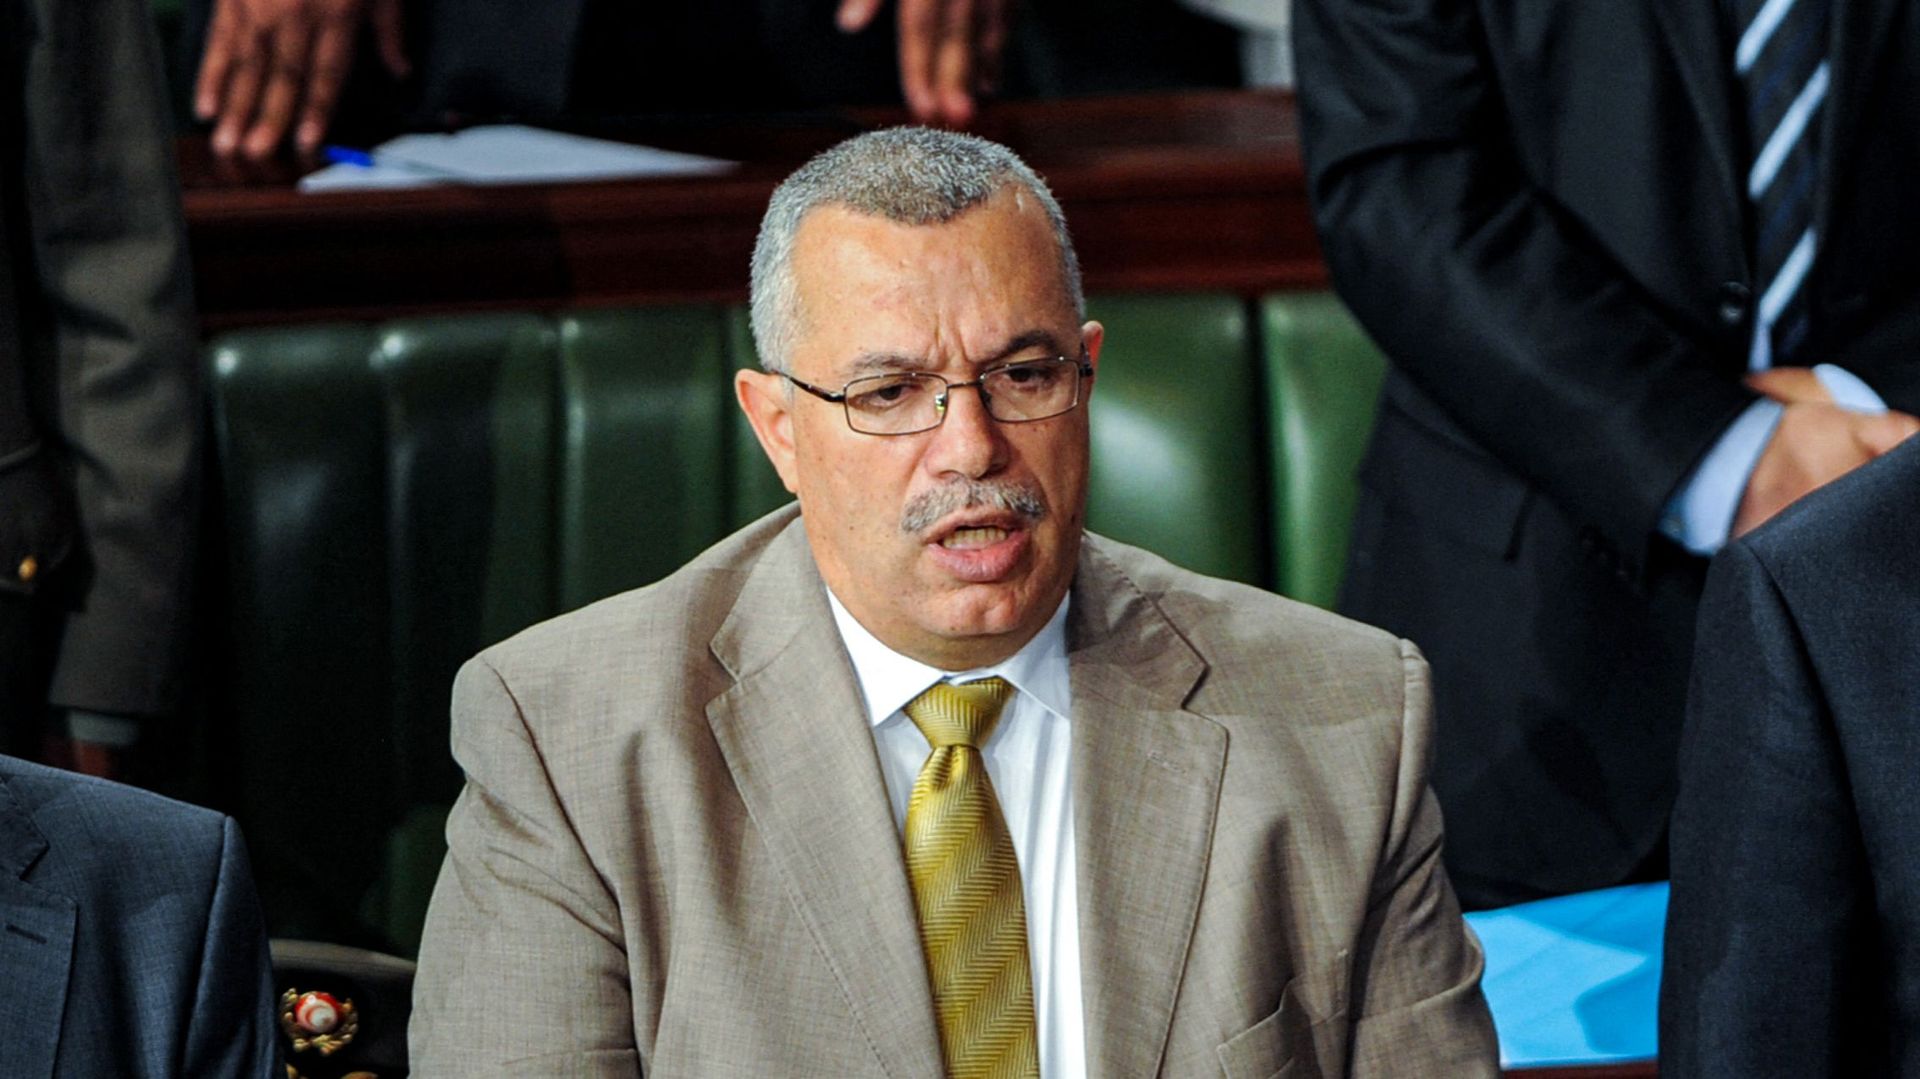 Noureddine Bhiri, alors conseiller du Premier ministre tunisien, ;assiste à une séance parlementaire à l'Assemblée constituante dans la capitale Tunis.